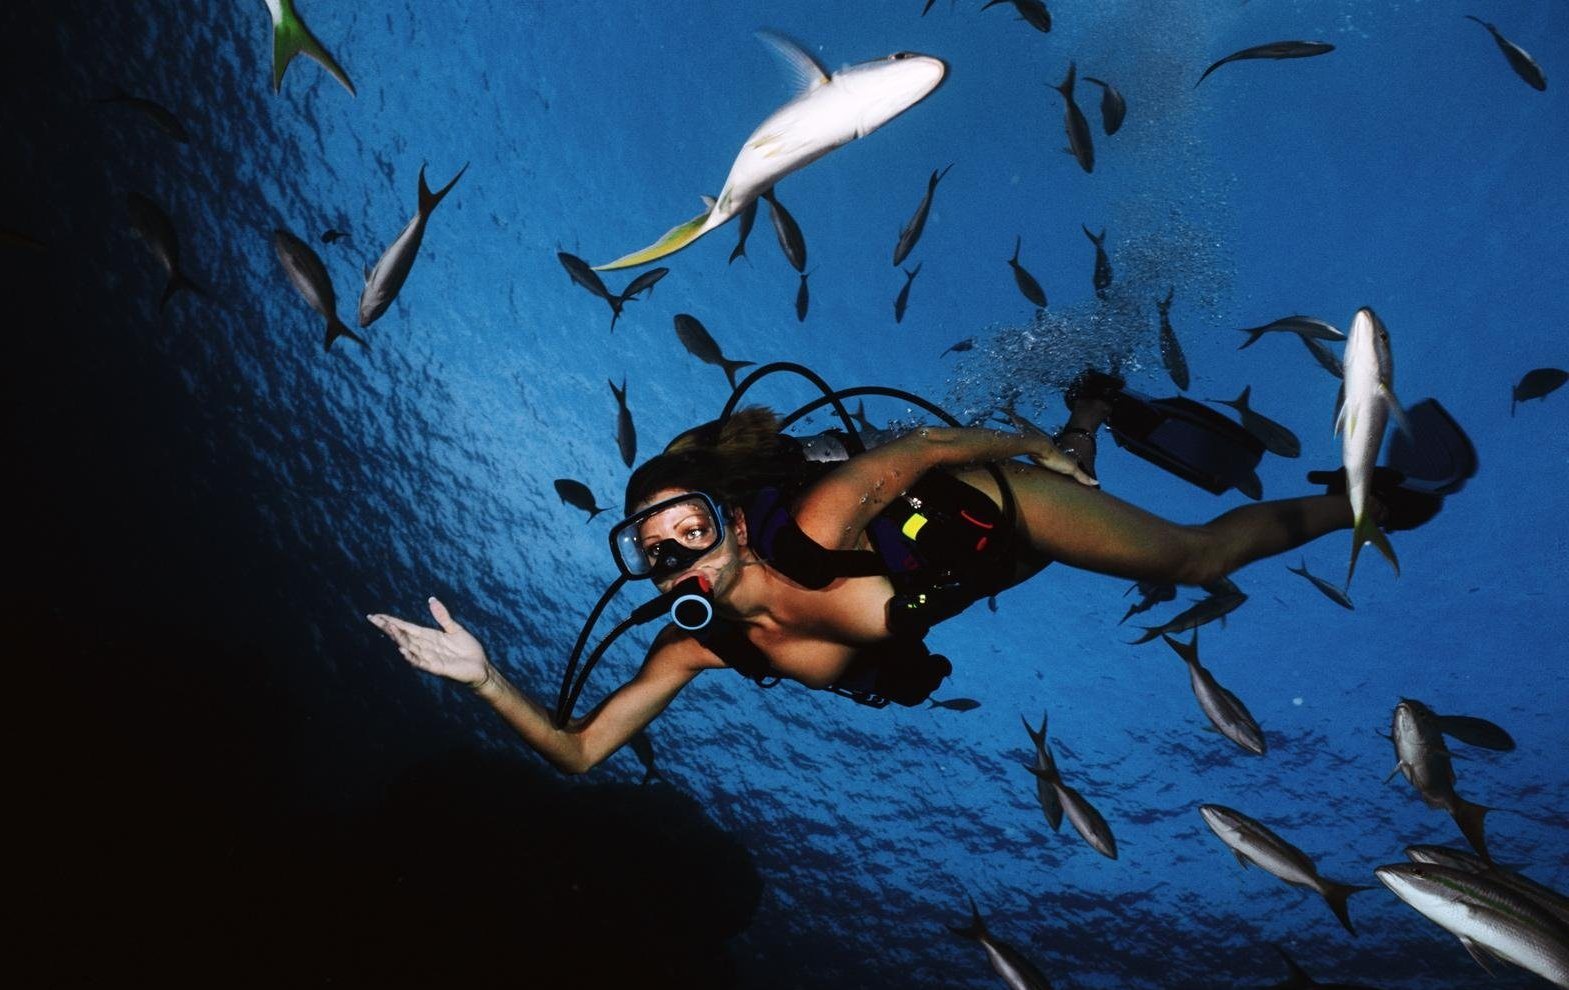 Голая девушка дайвер с аквалангом под водой на морском дне